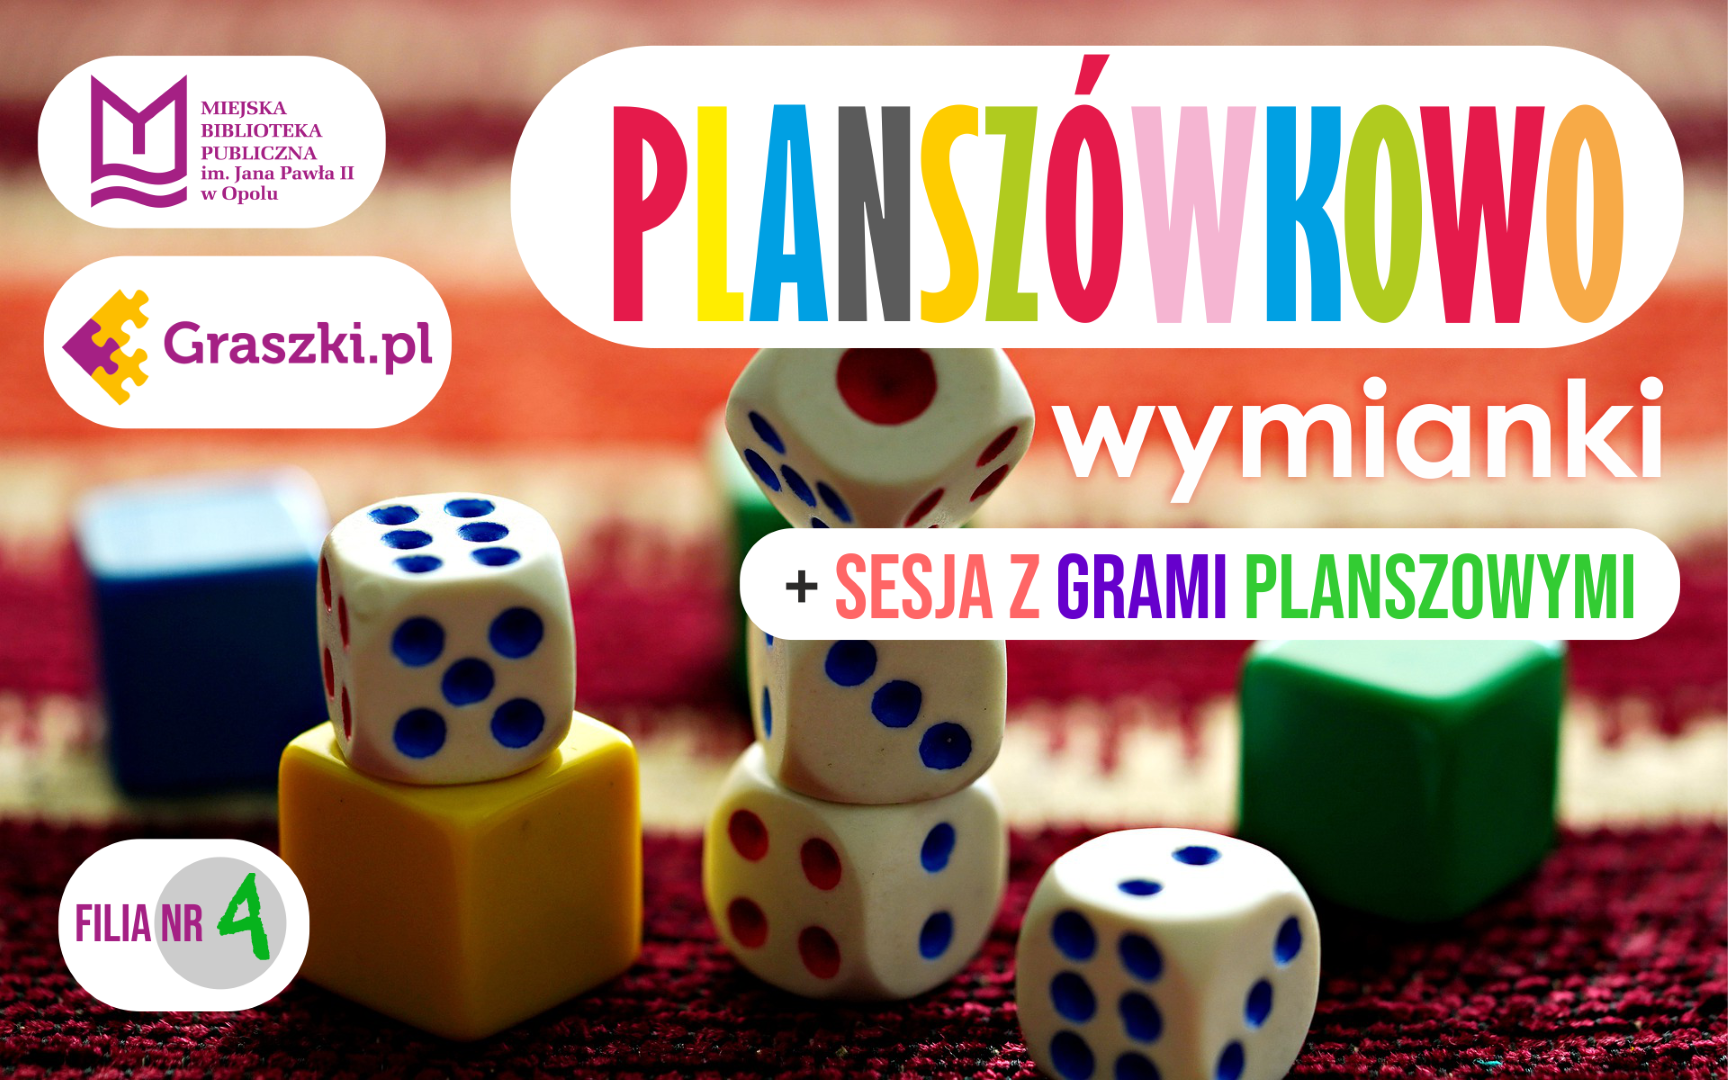 Planszówkowo: wymianki + sesja z grami planszowymi (Graszki.pl)